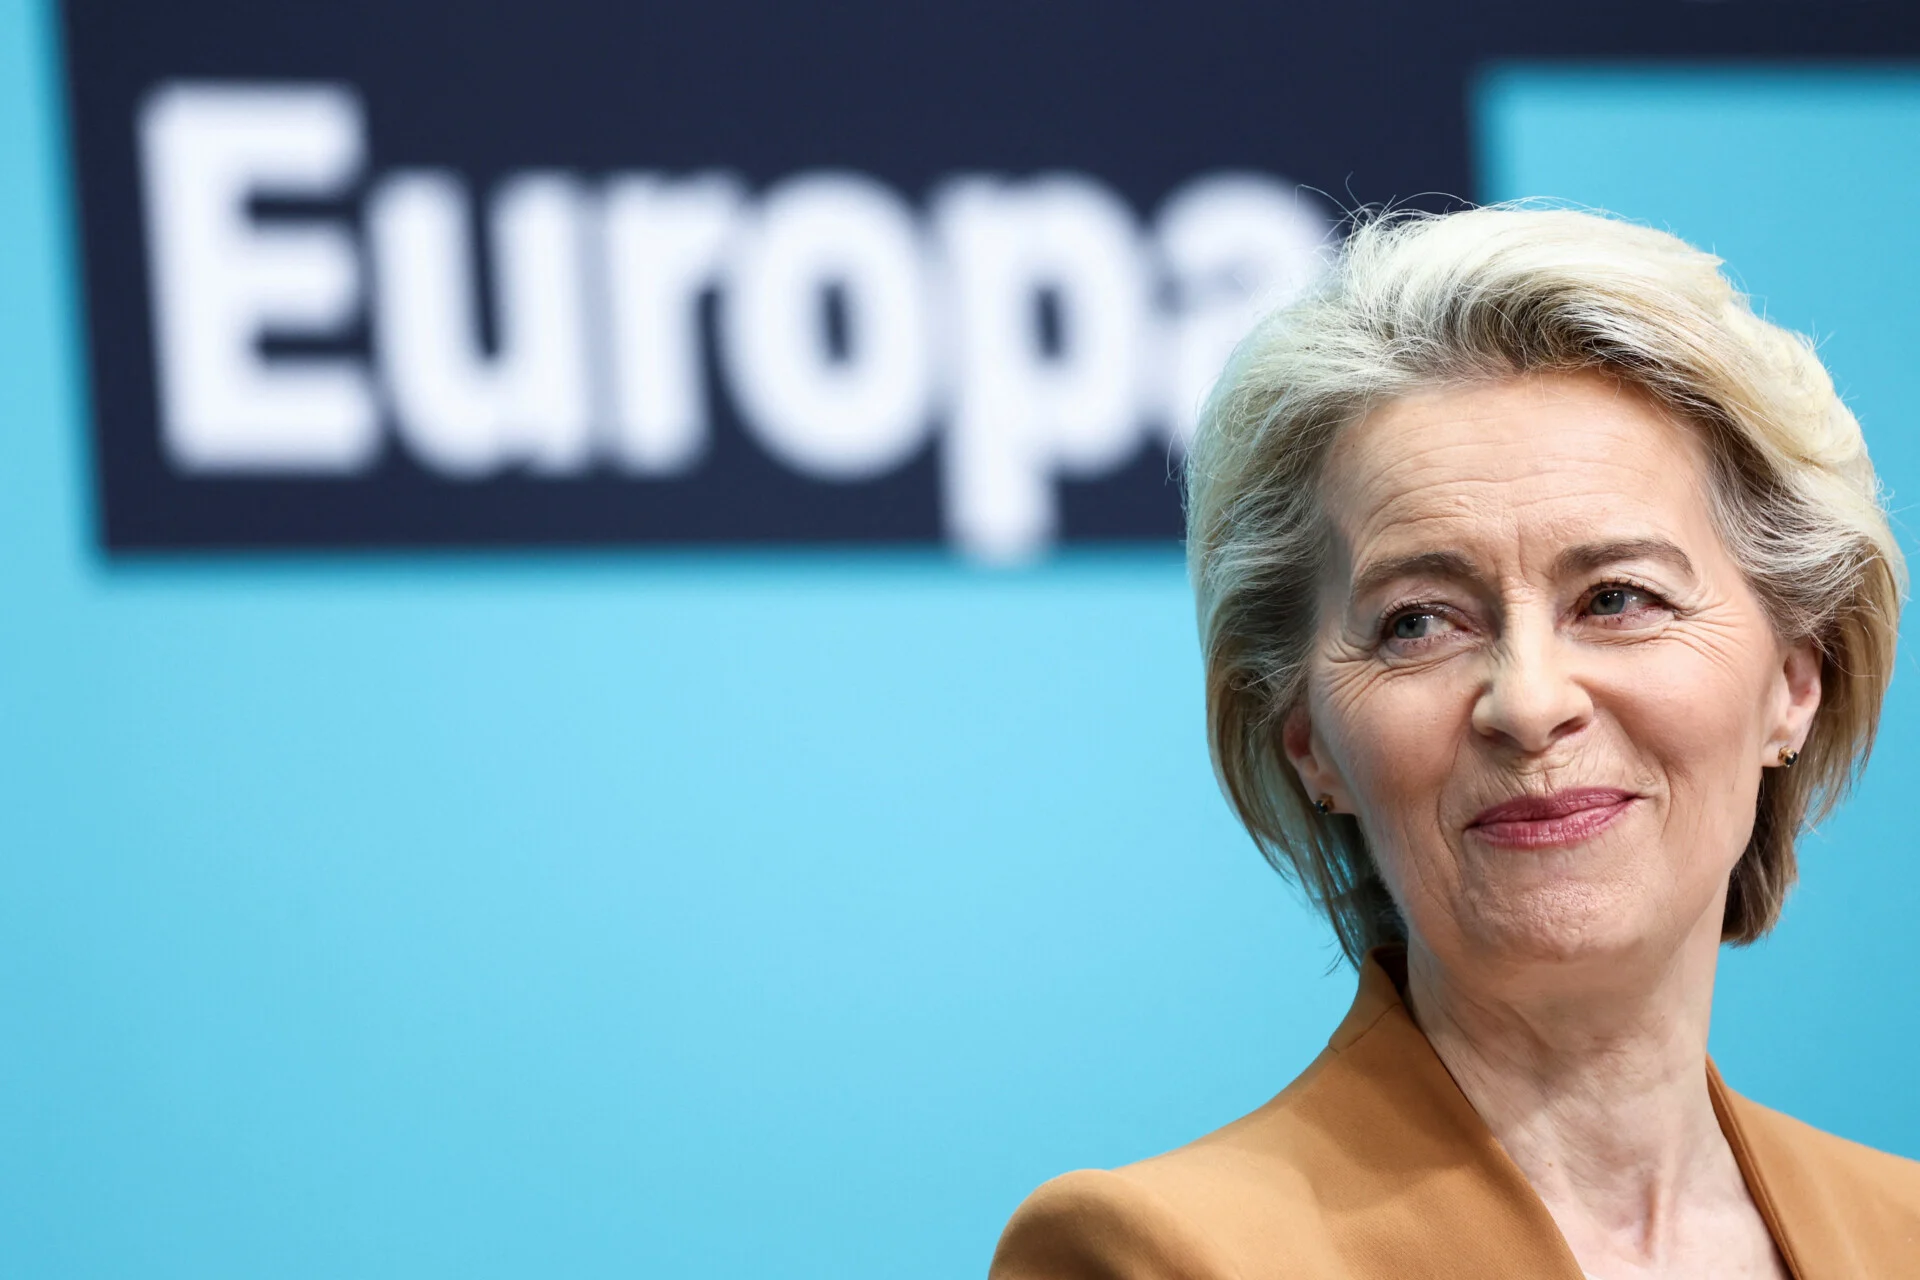 Διαφθορά στην Ε.Ε.: Επίτροποι κατηγορούν την Ούρσουλα φον ντερ Λάιεν για «ρουσφέτι» 1,44 εκατ. ευρώ